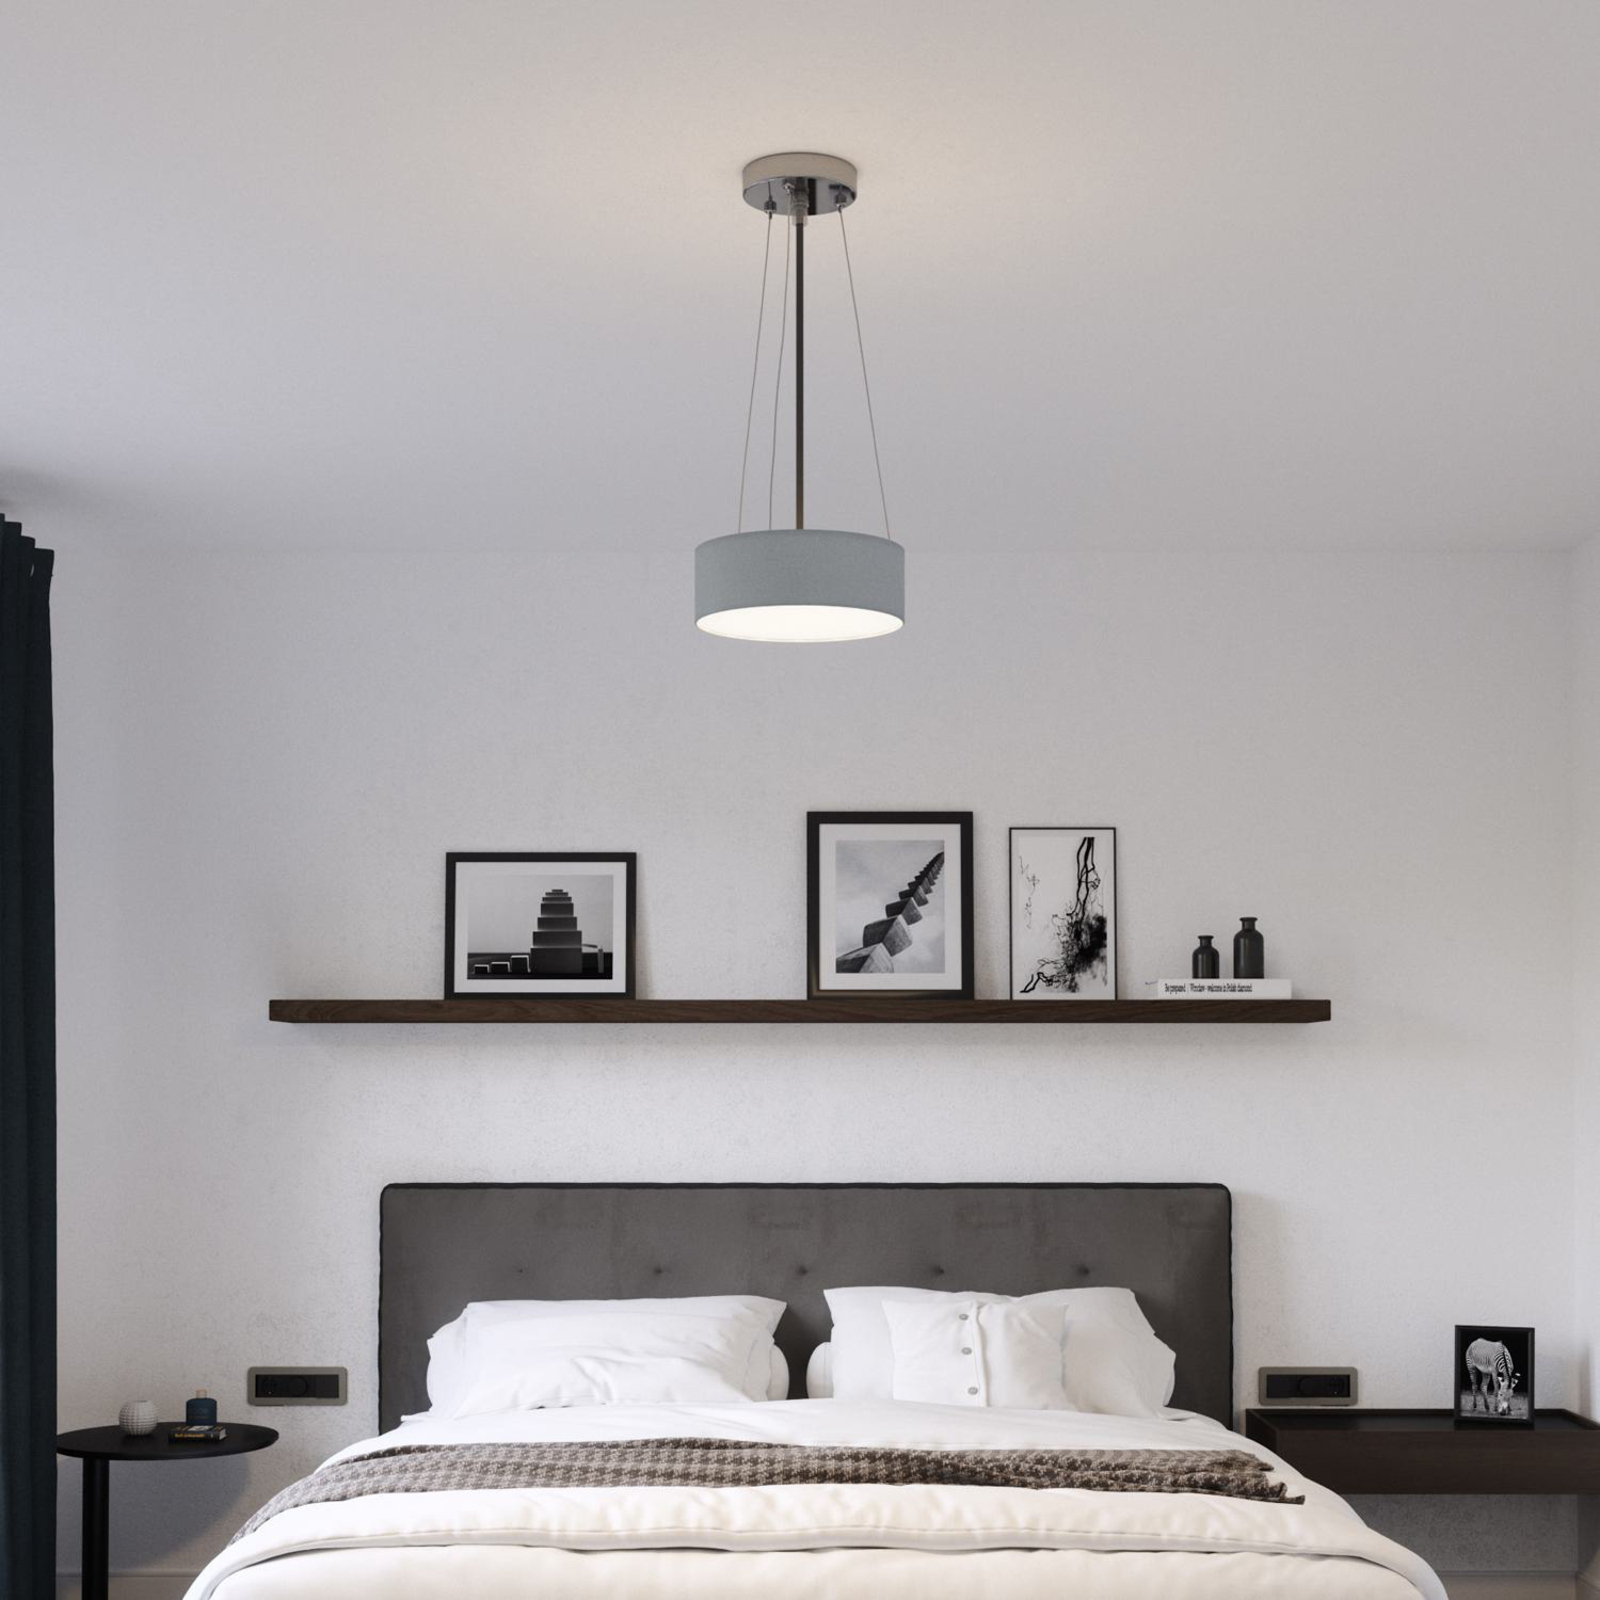 Loftslampe Ceiling Dream, Ø 30 cm, tekstil, grå